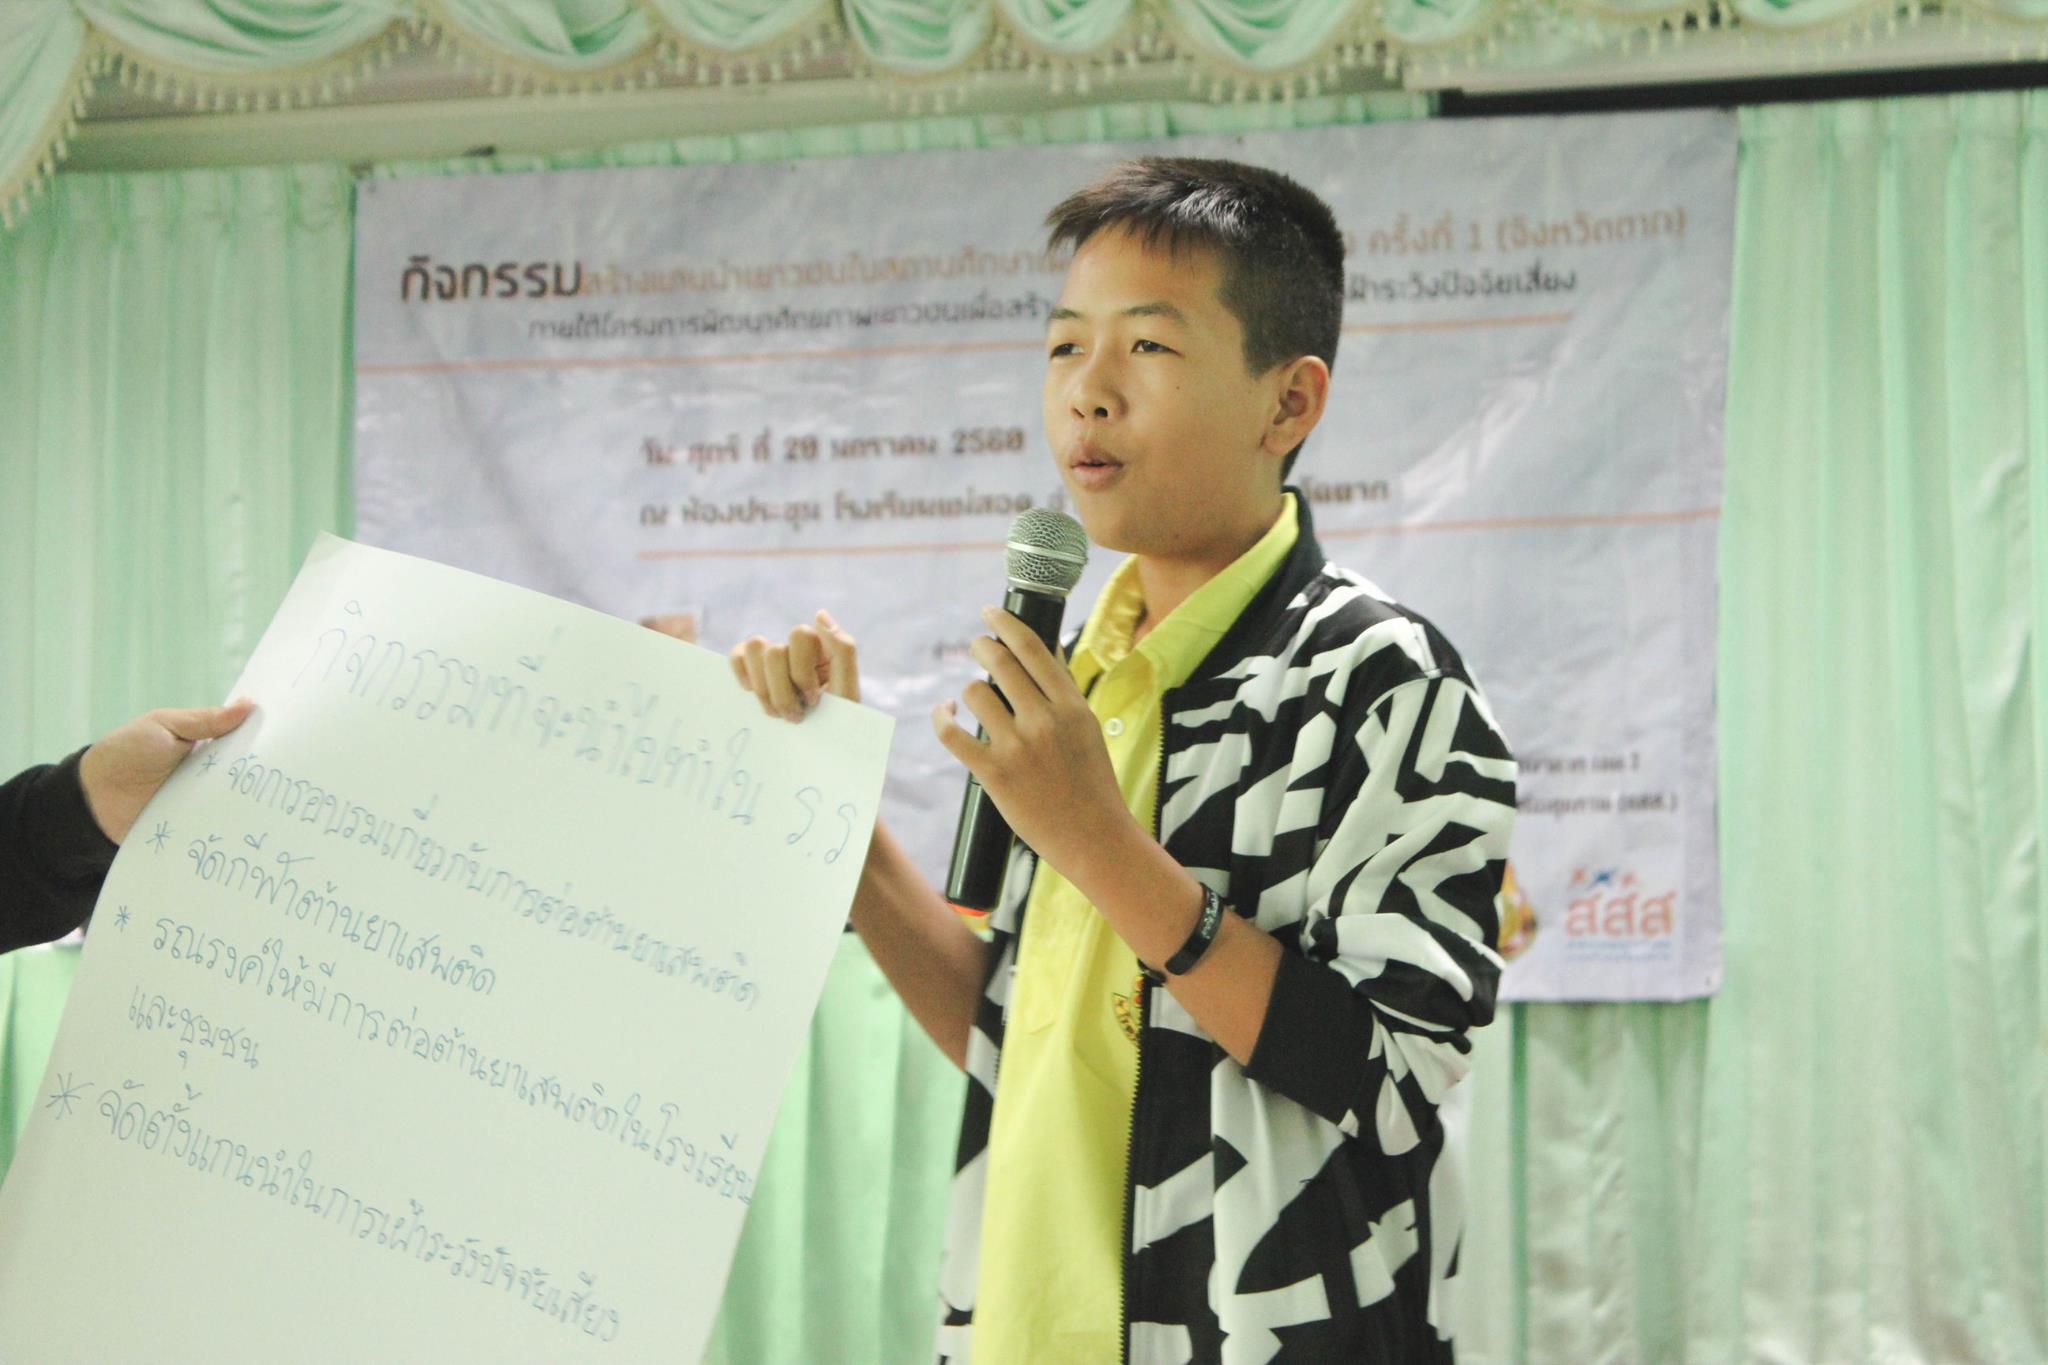 สร้างแกนนำเยาวชนในสถานศึกษาเพื่อเฝ้าระวังปัจจัยเสี่ยง thaihealth